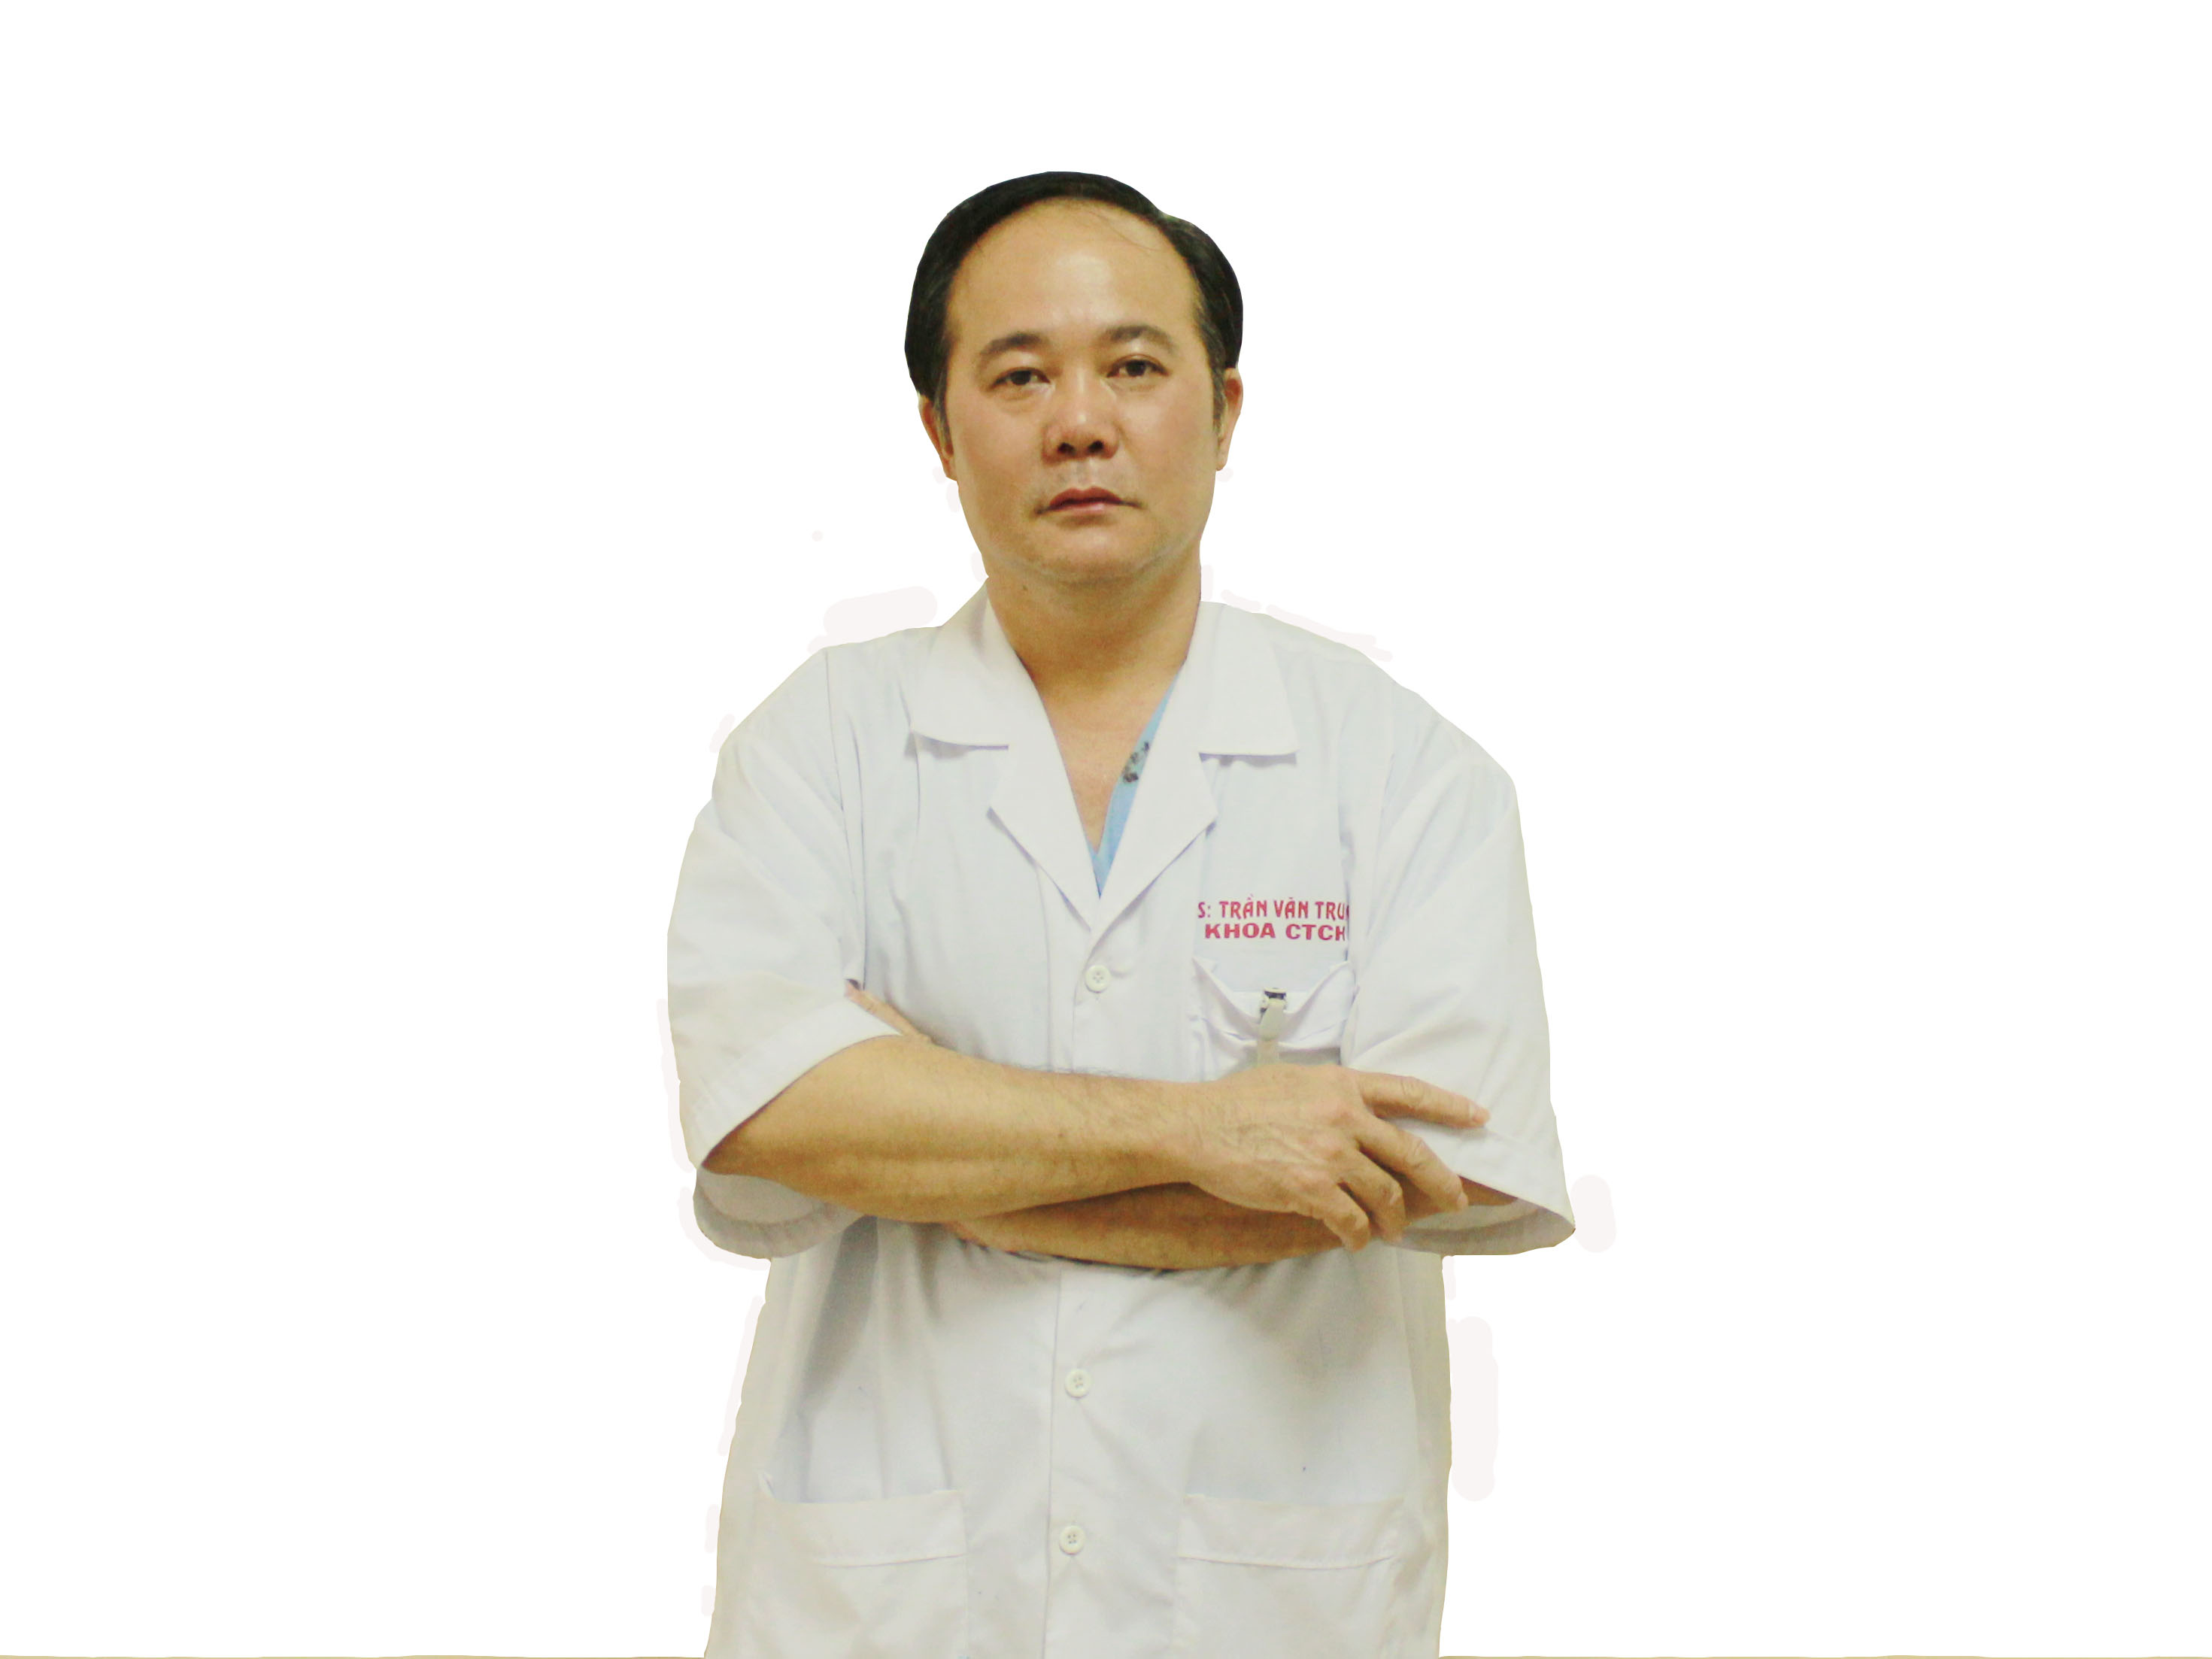 BSCKII. Trần Văn Trung – Phó Trưởng Khoa CTCH